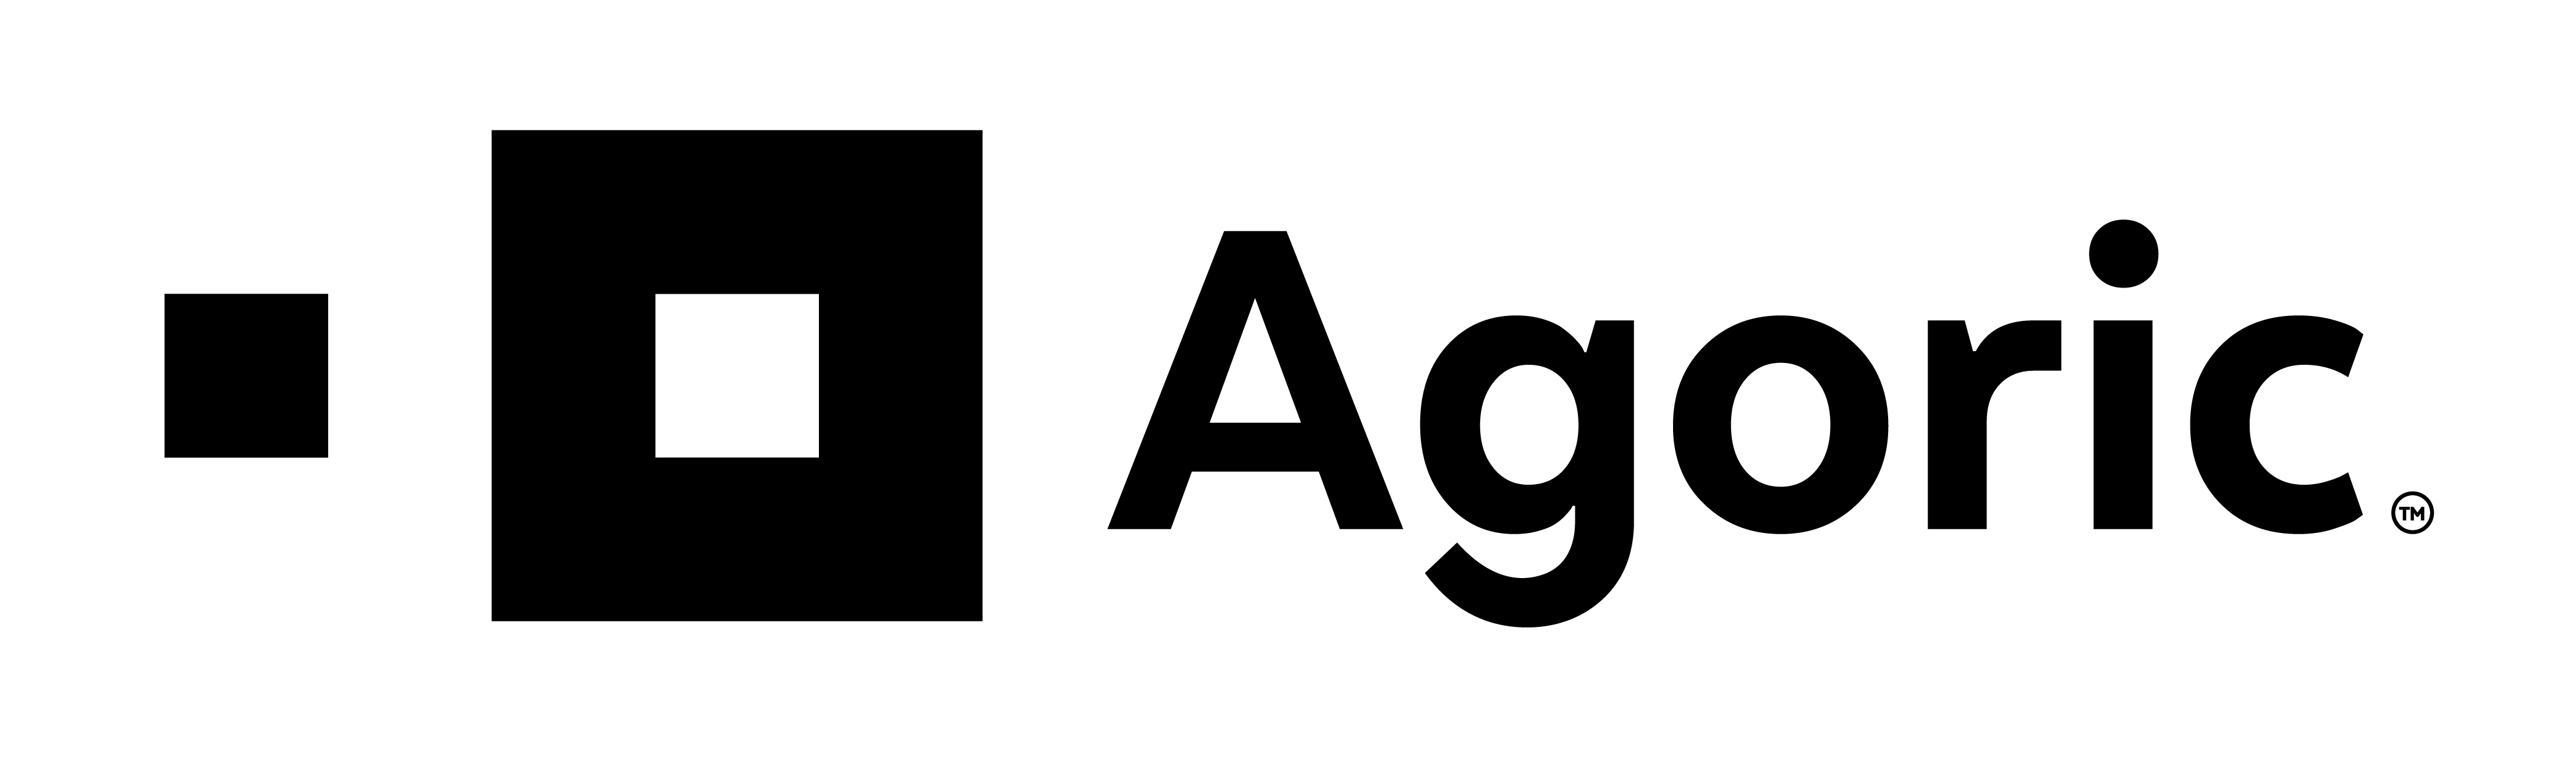 Agoric-logo-black